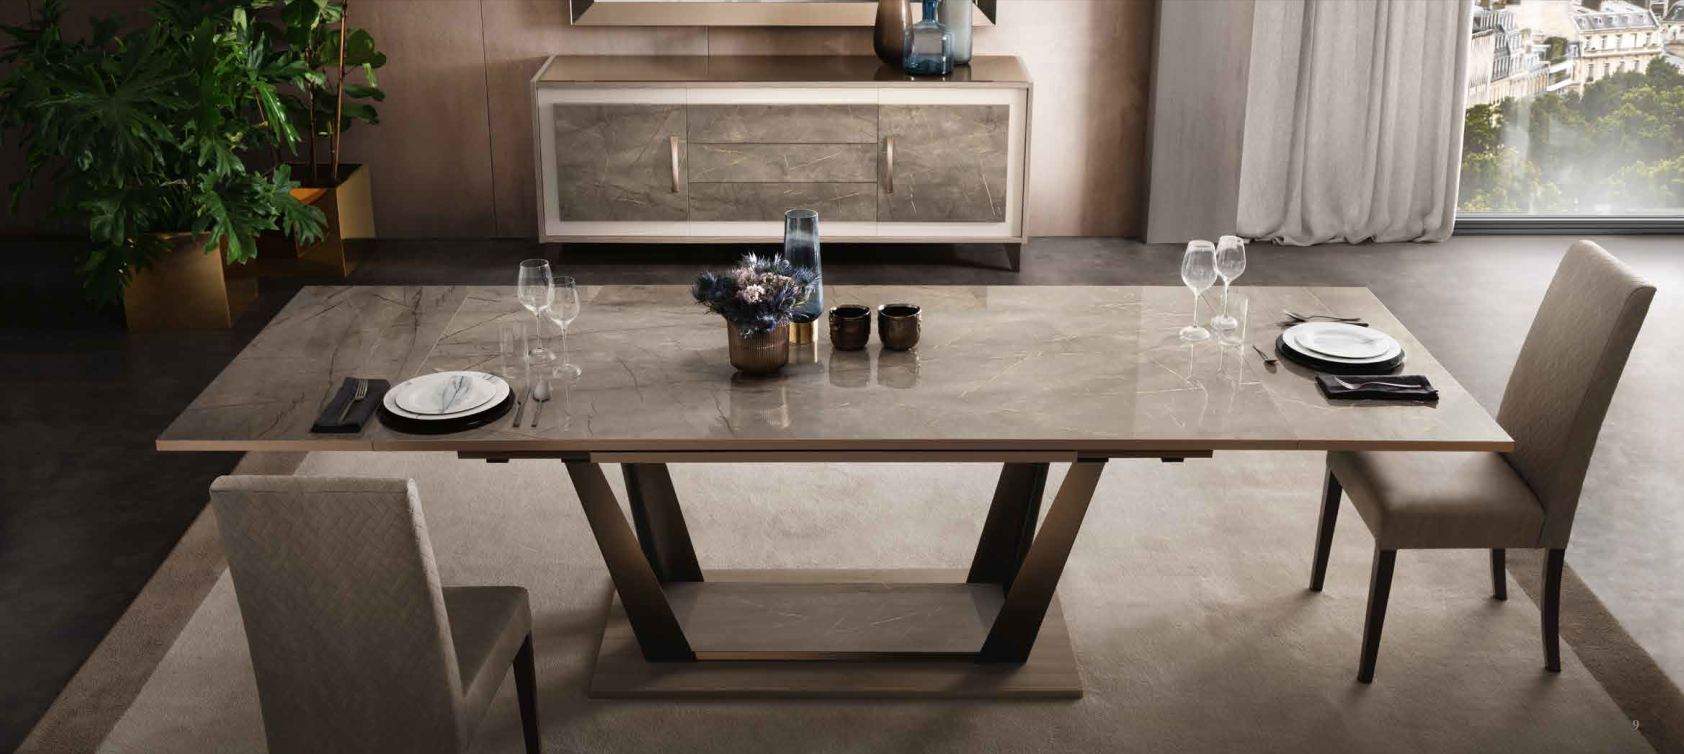 Итальянская мебель для гостиной Ambra (Adora) (витрина 2А + стол + 3 стула + буфет + зеркало, как на фото) фабрики ARREDOCLASSIC_178594